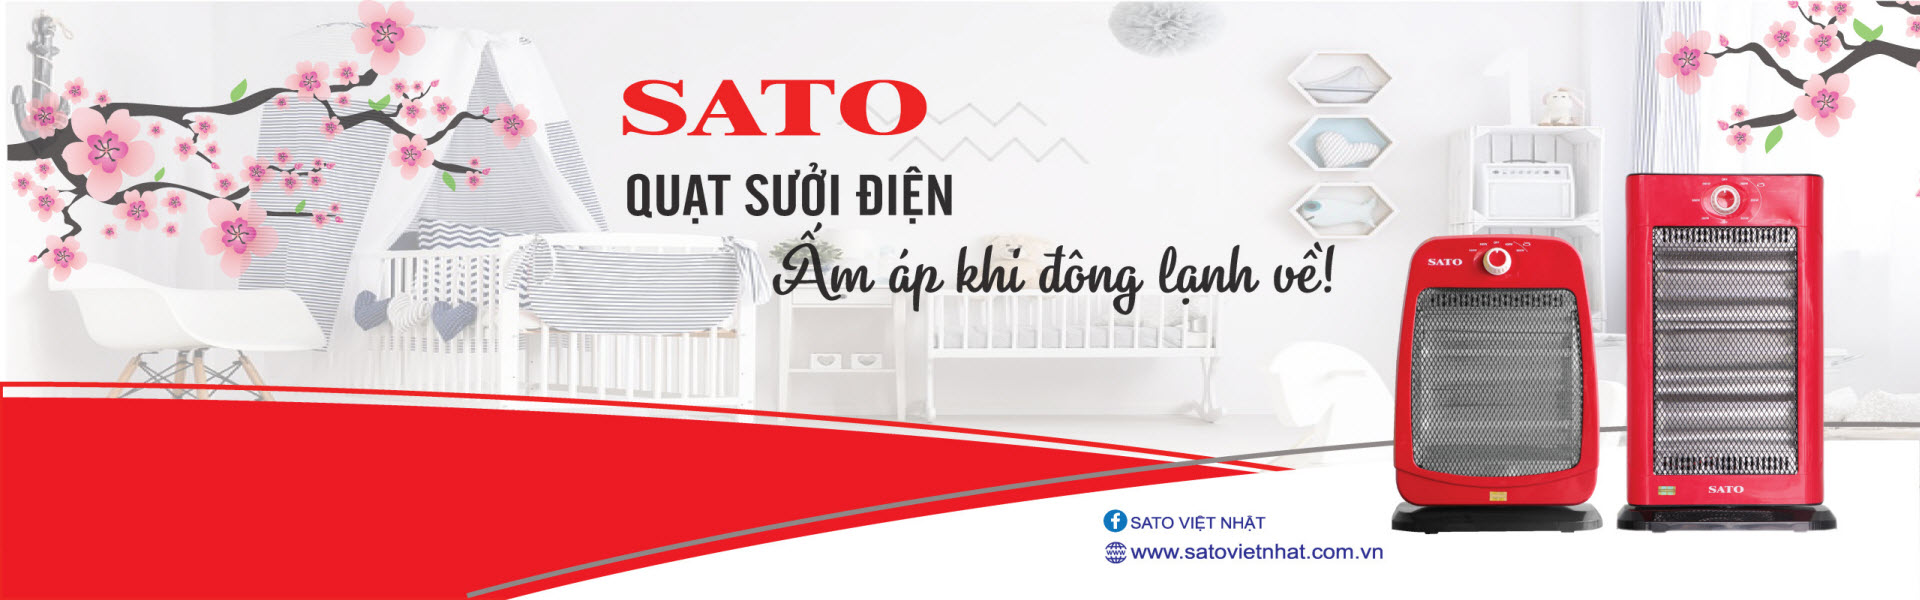 SATO VIỆT NHẬT - Nhà sản xuất đồ điện gia dụng hàng đầu Việt Nam!